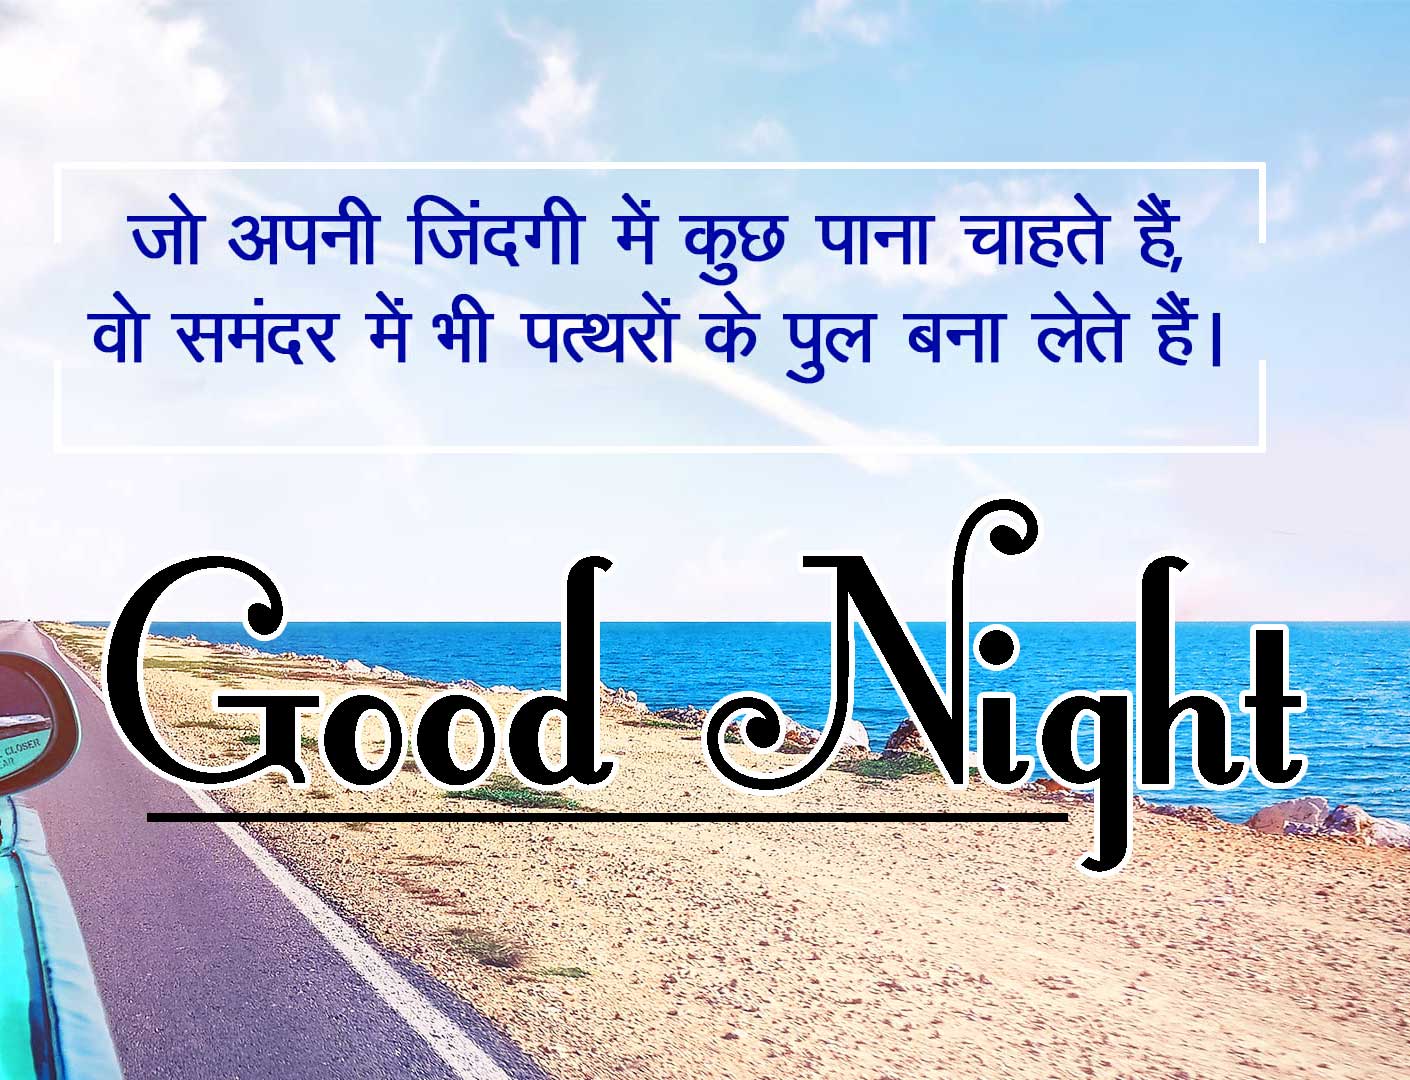 Good Night Images With Hindi Shayari Pics Free Download Free 